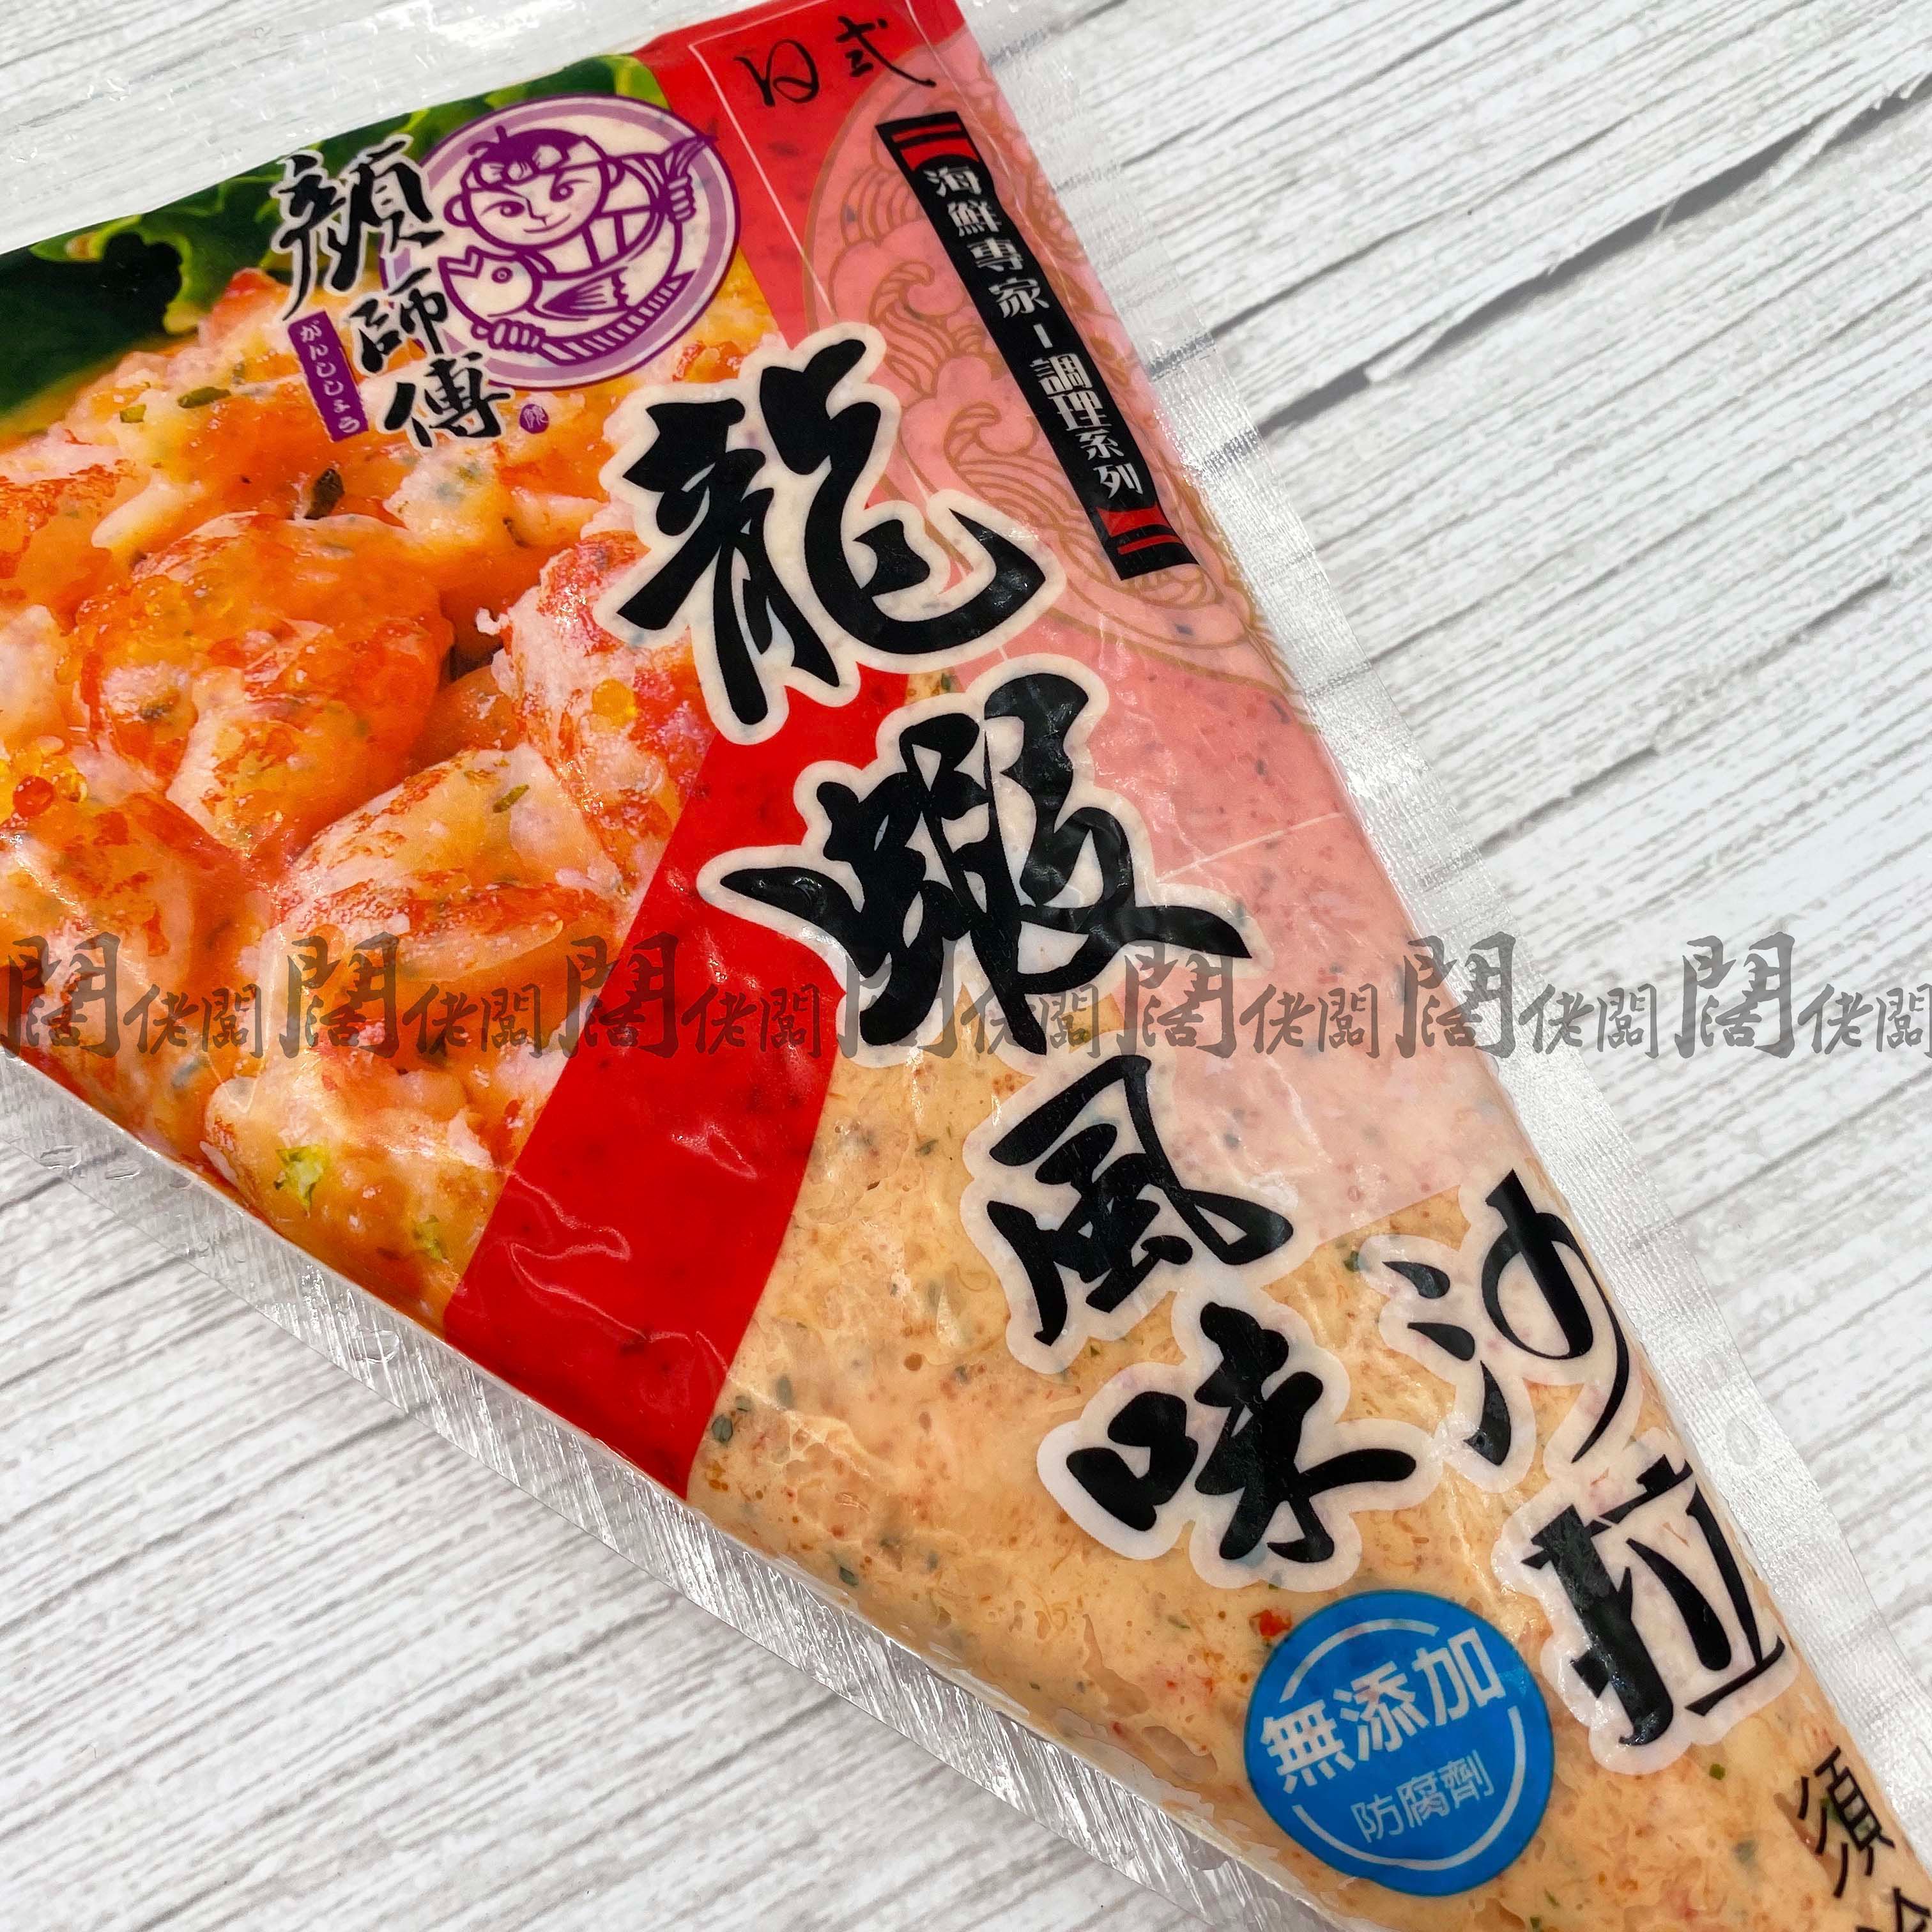 龍蝦沙拉 顏師傅龍蝦沙拉 500g/包